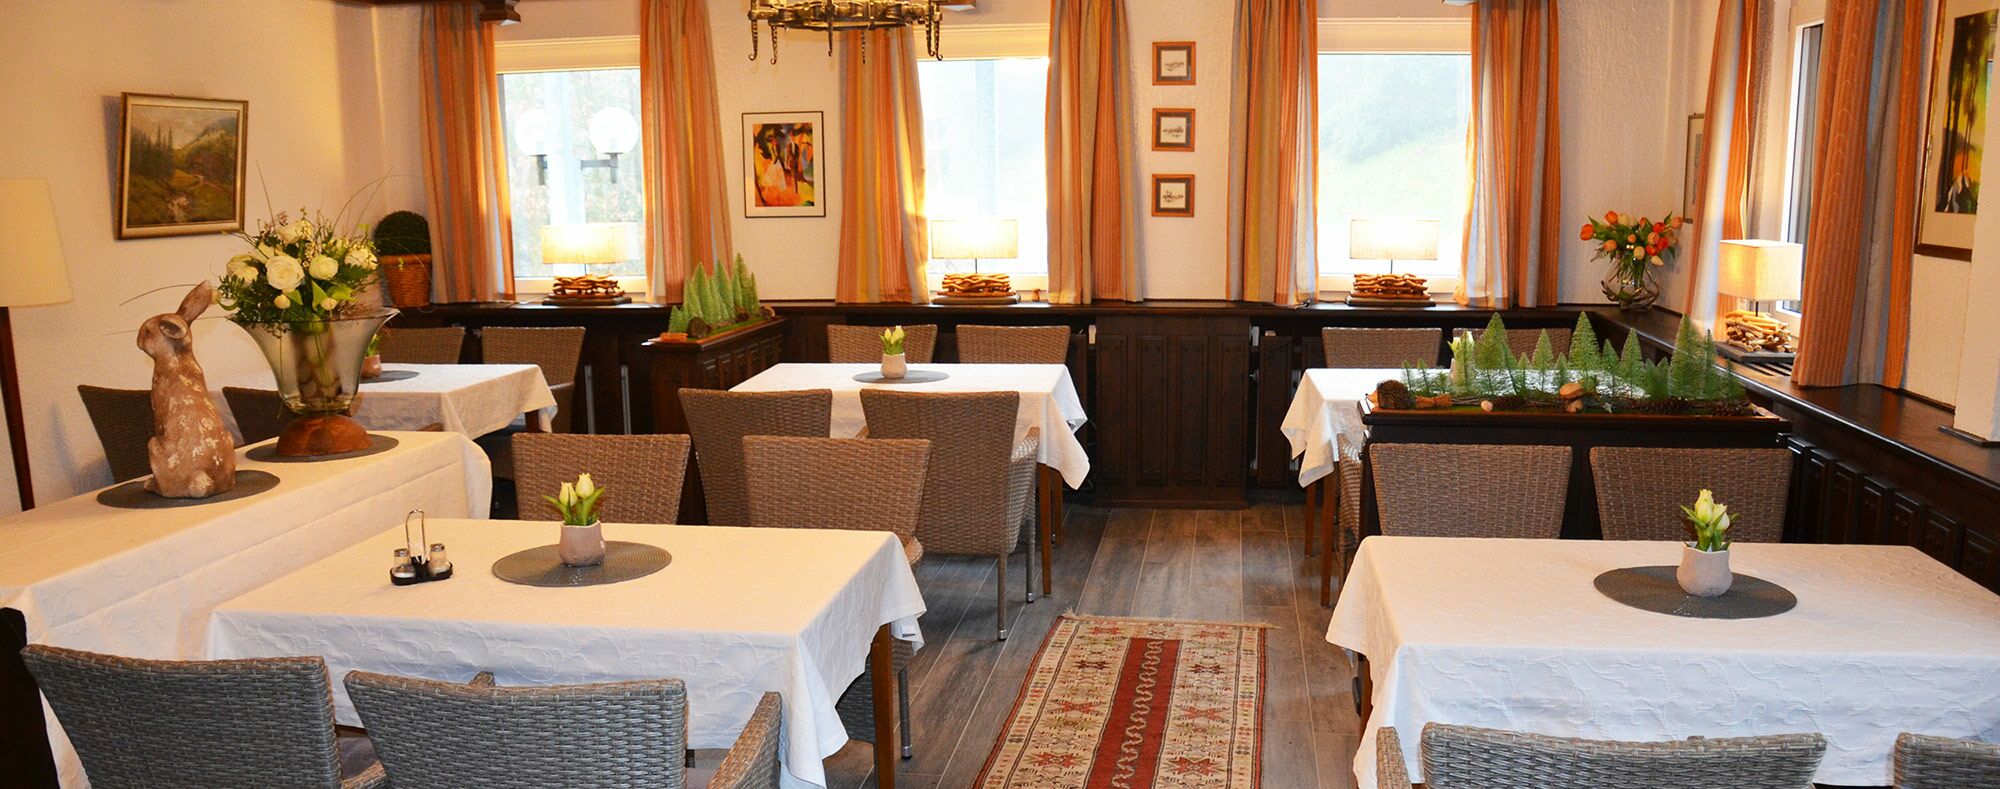 Waldgasthaus Nachtigall - Gernsbach - Baden-Baden - Hotel / Fremdenzimmer / Restaurant